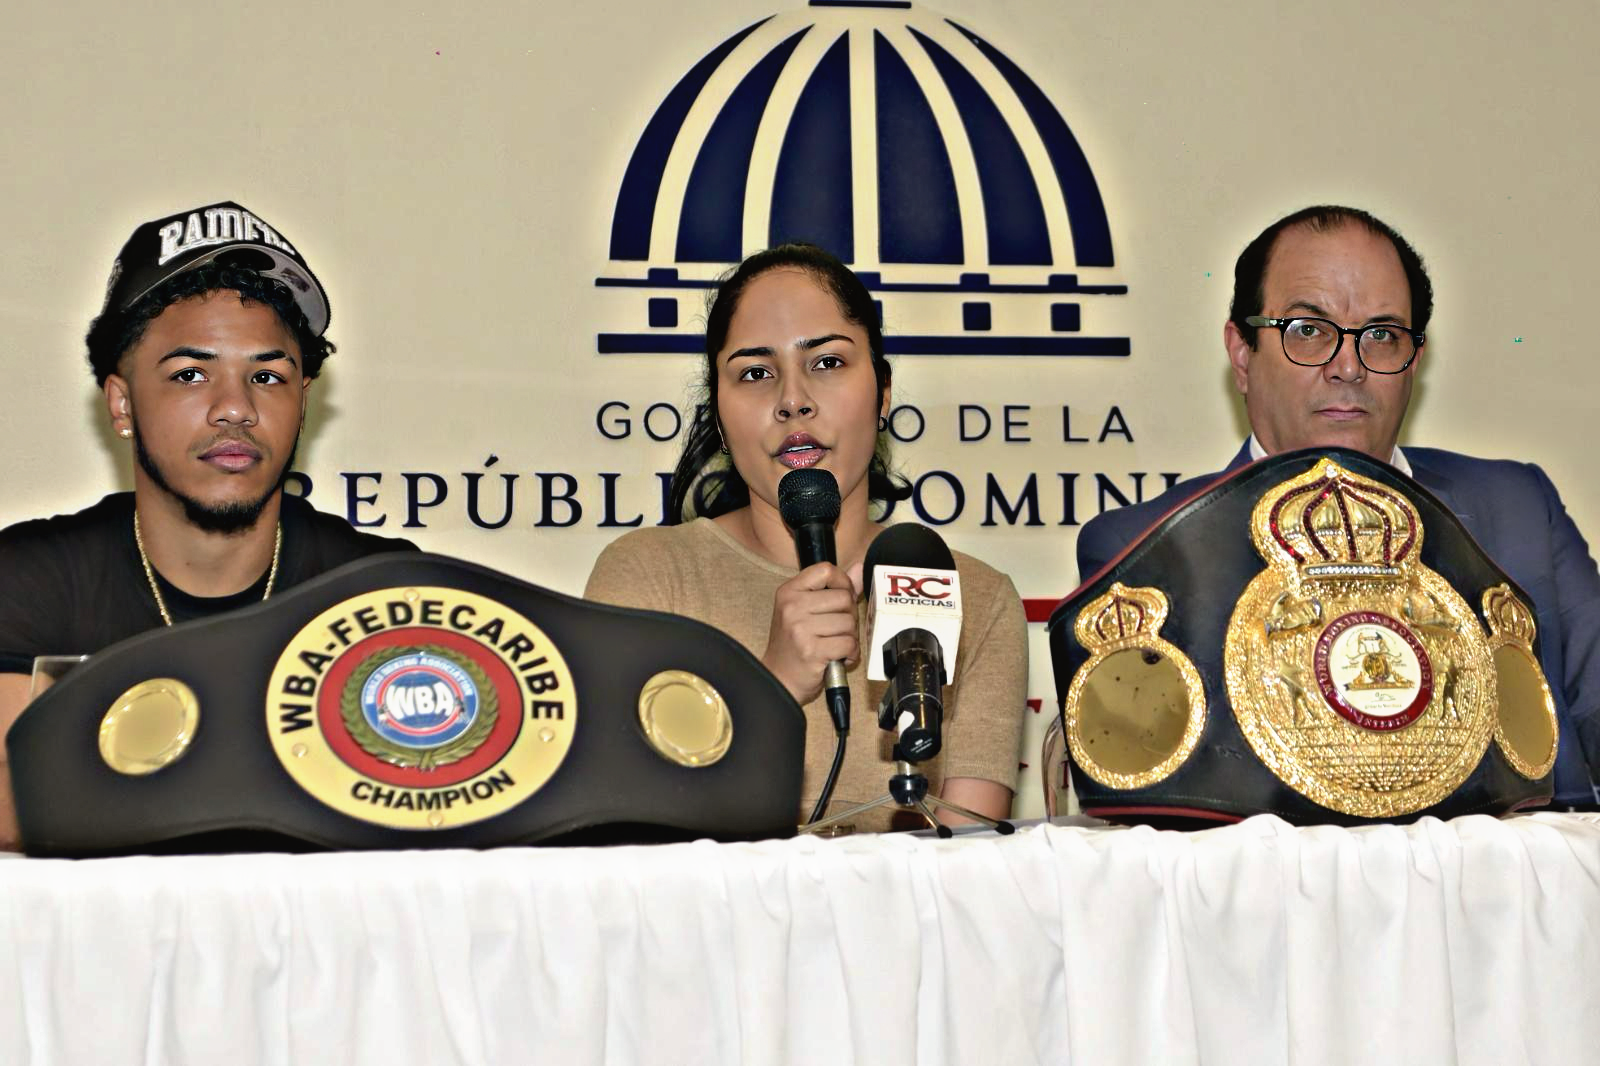 Bélgica Peña da a conocer los participantes en la cartelera boxística, en compañía del viceministro de Deportes, Franklin De la Mota, y de Erick “Mini Pac-Man” Rosa.